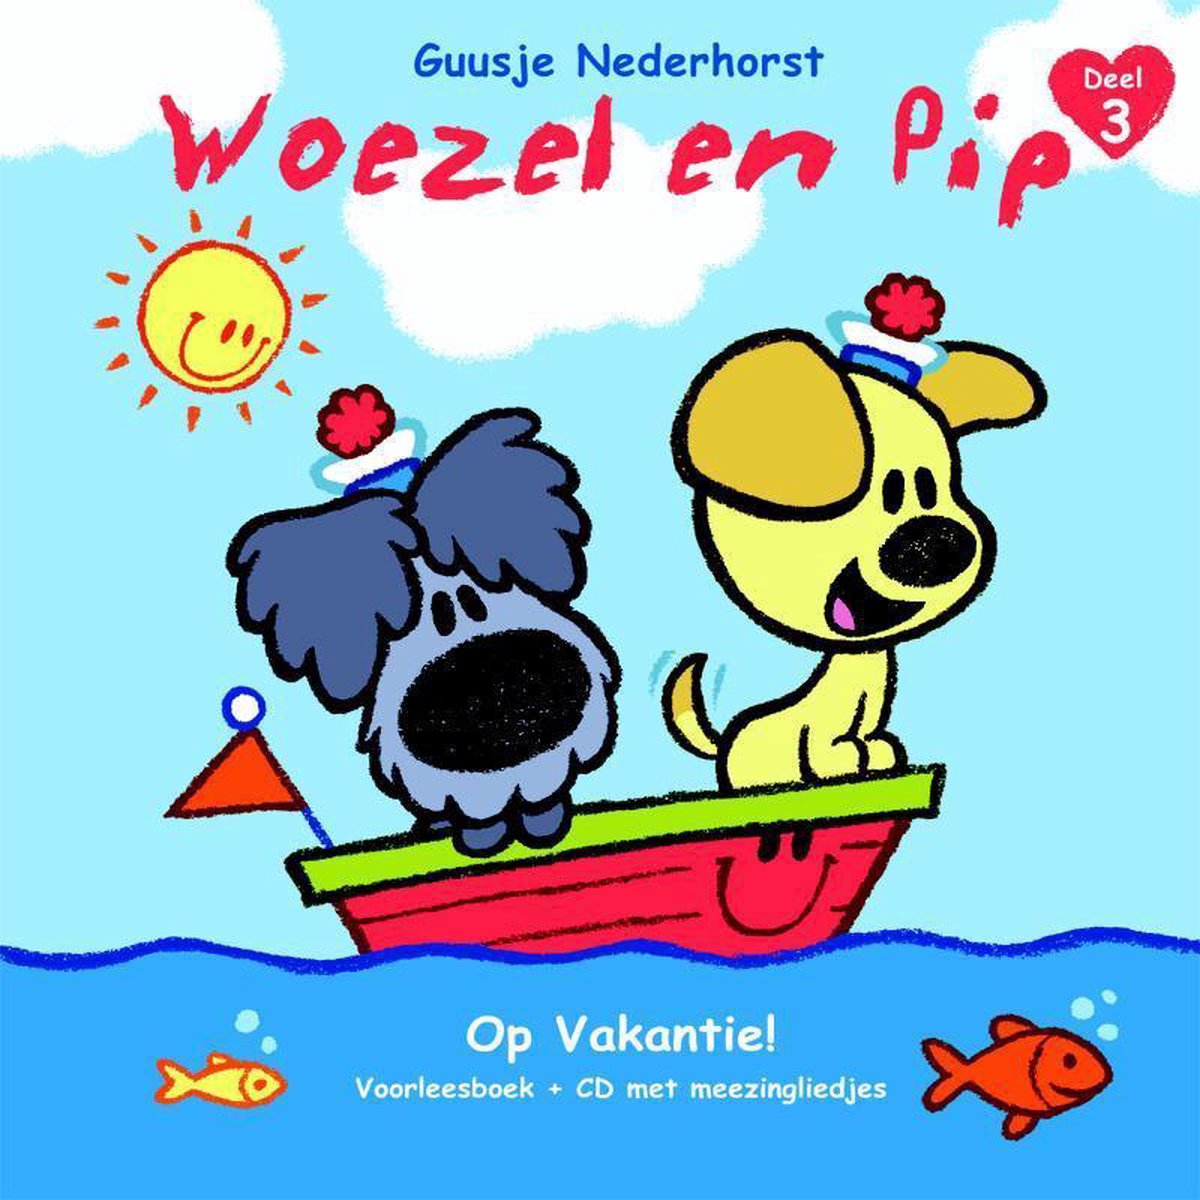 Pip deel 3 - Op Vakantie! (met vol meezingliedjes), Nederhorst |... | bol.com